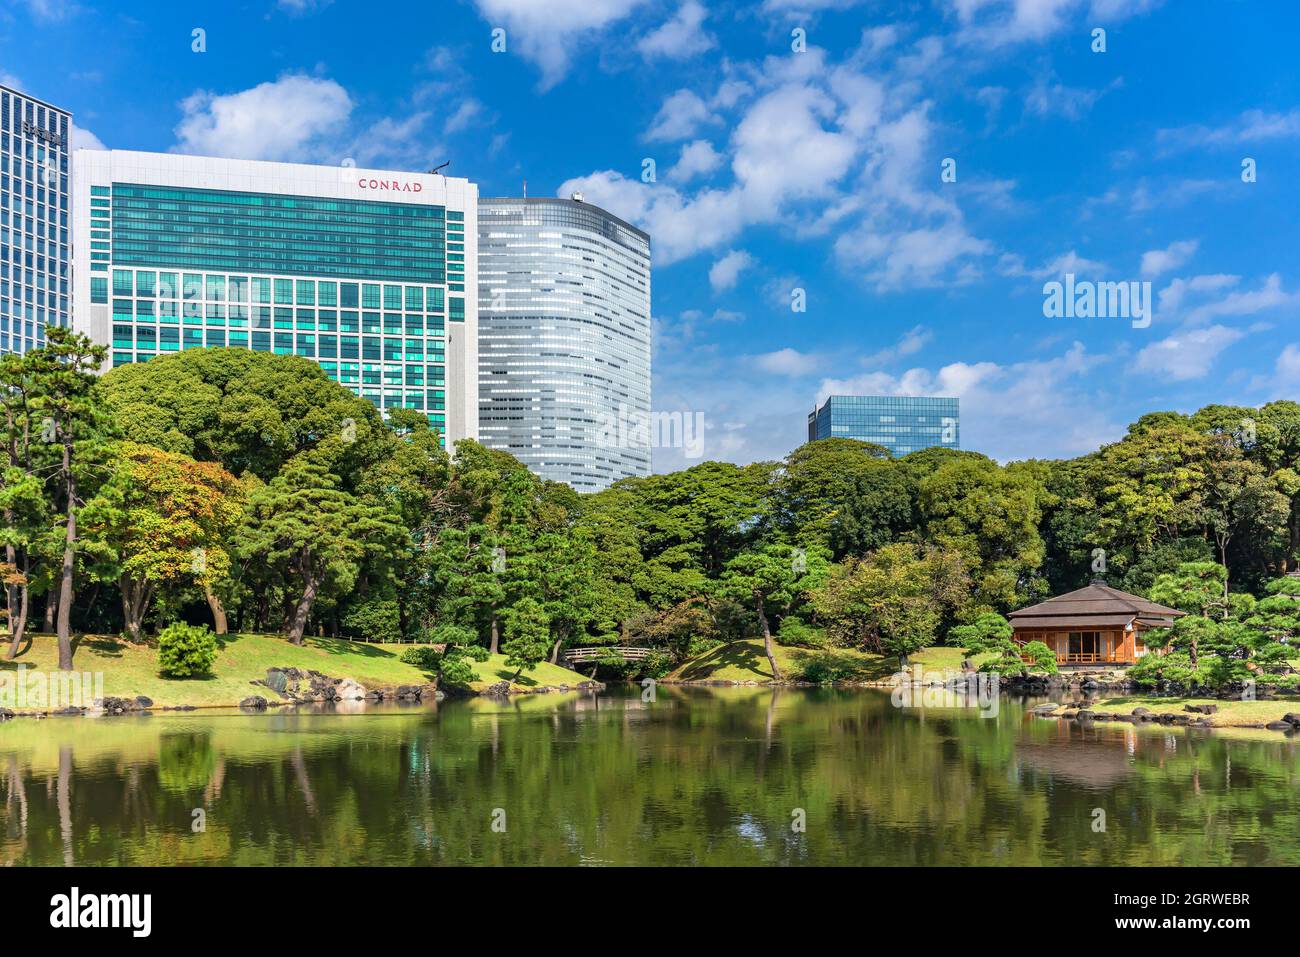 tokio, japan - oktober 28 2021: Conrad und Dentsu Gebäude mit Blick auf den Shiori-no-ike Teich, der die Kiefern und das traditionelle japanische Chashitsu widerspiegelt Stockfoto